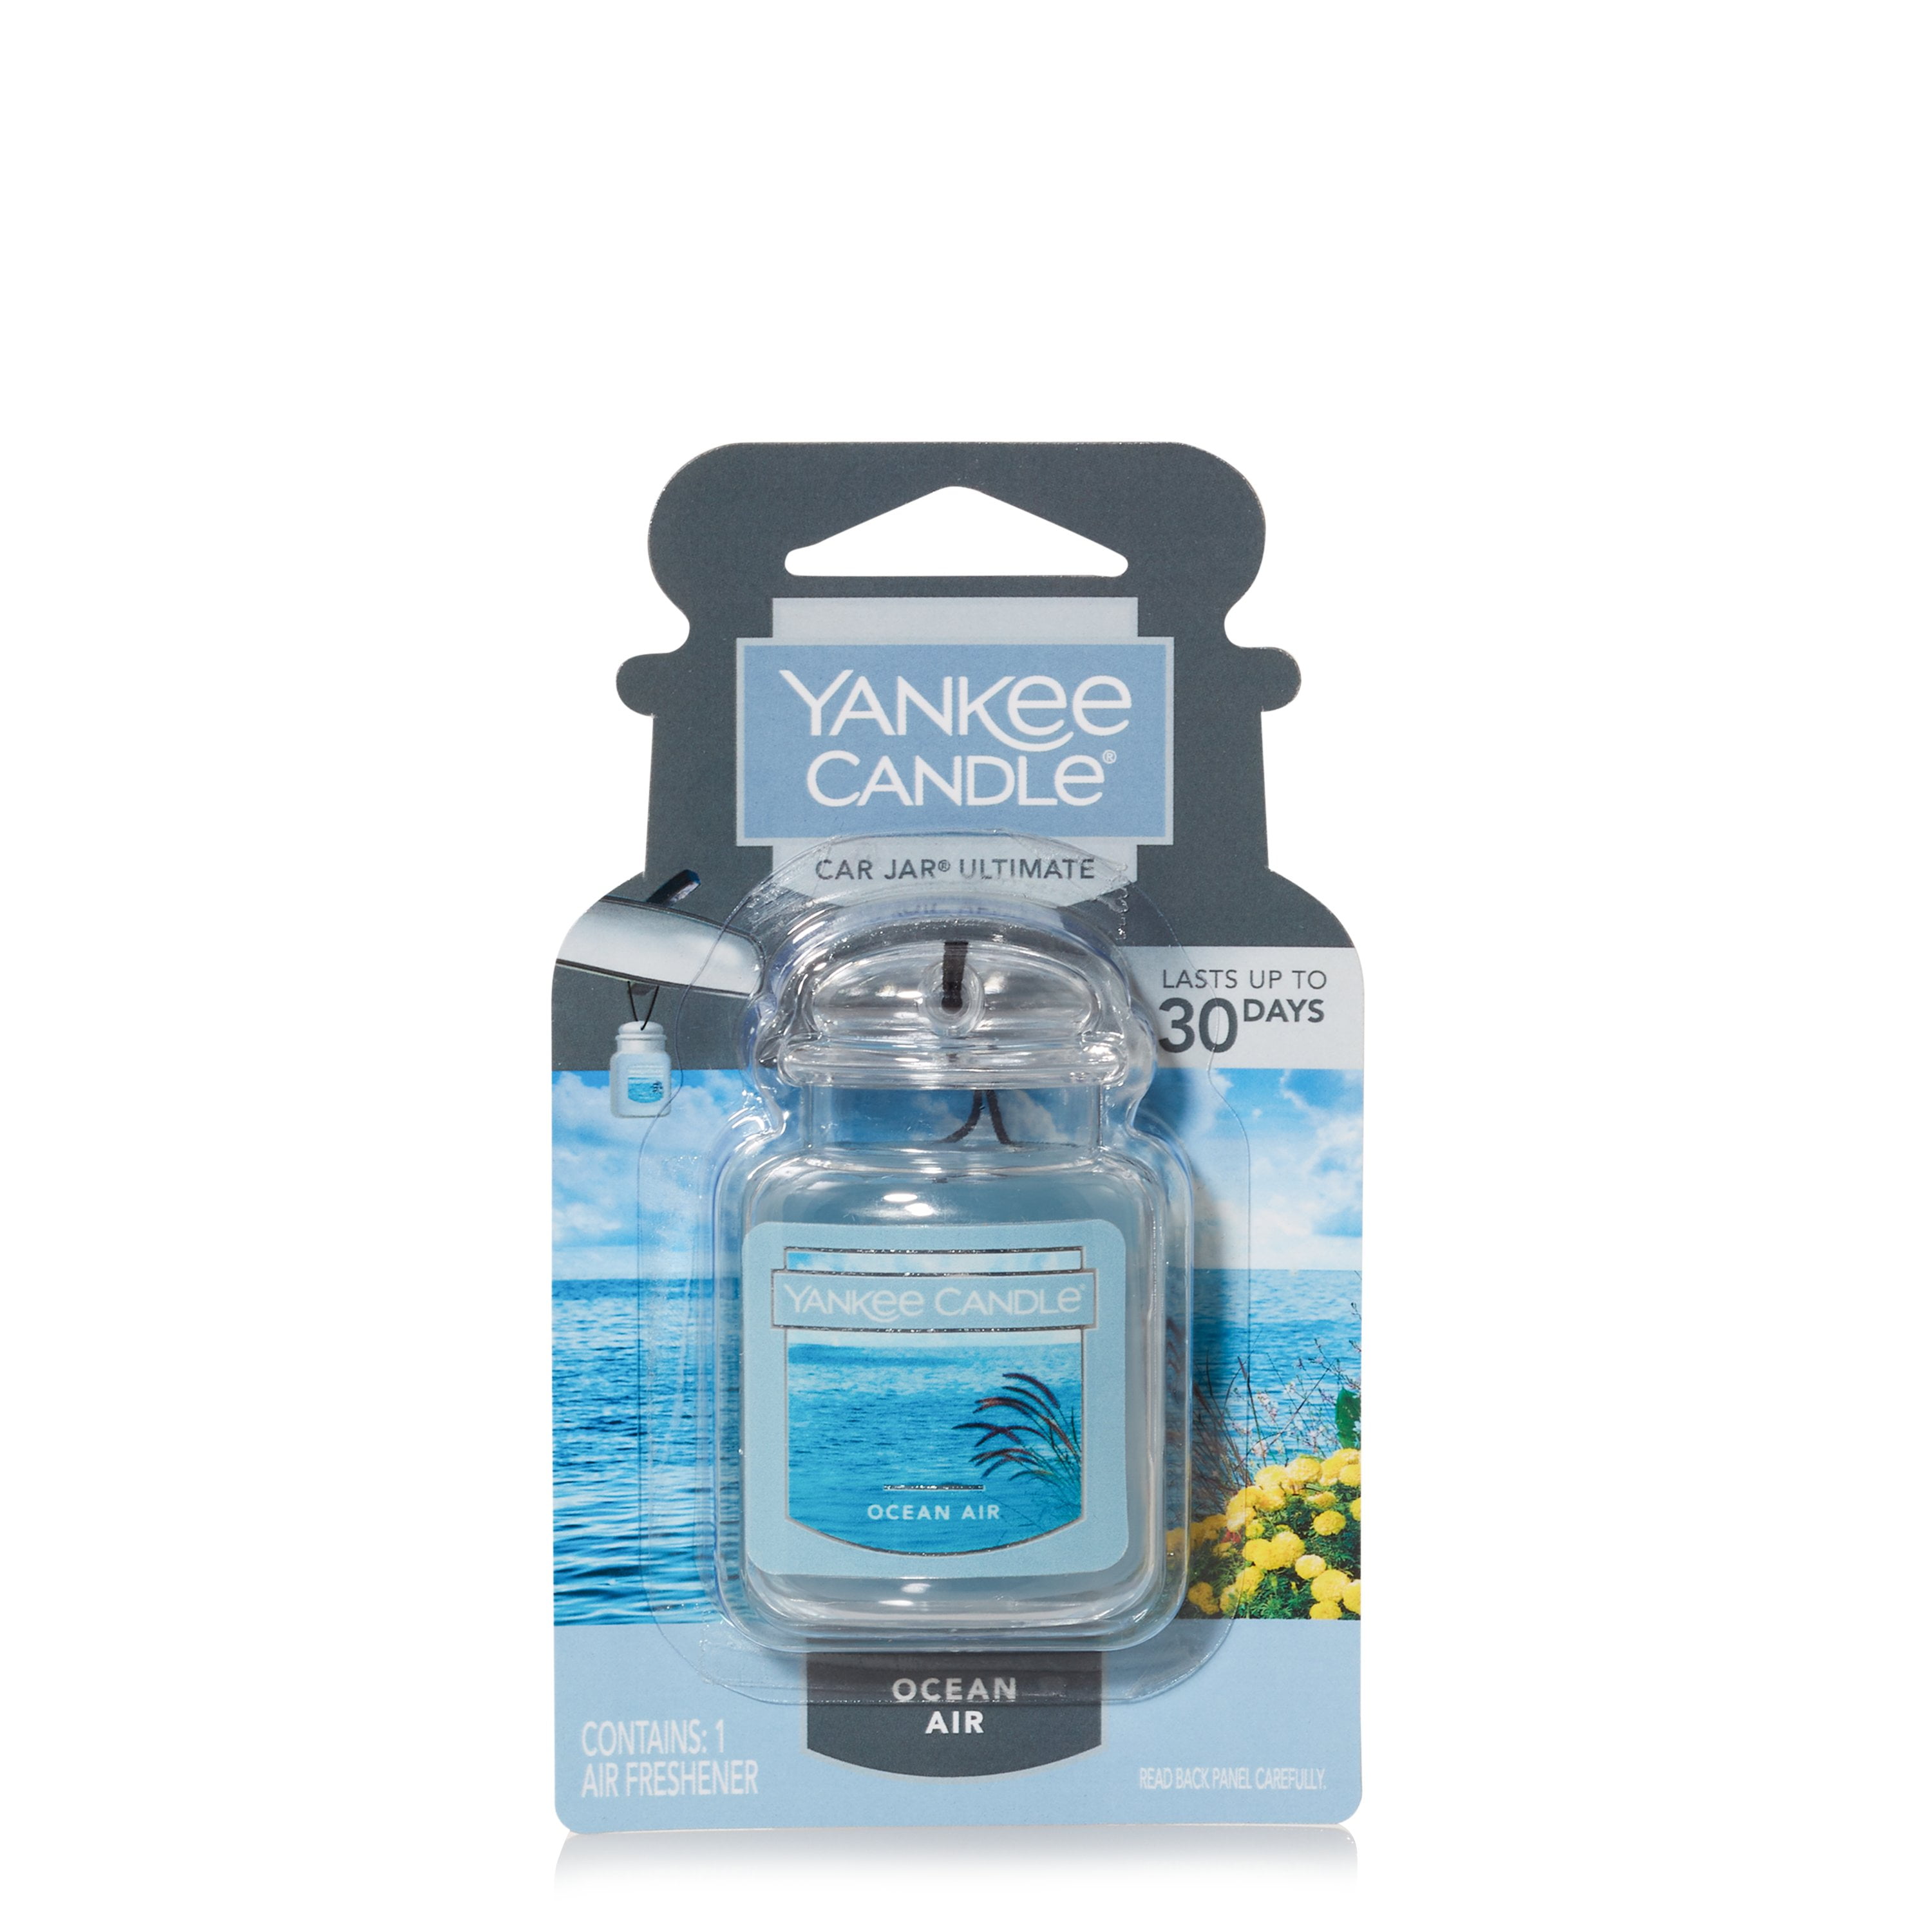 Yankee Candle Car Jar Ultimate Ocean Air Scent Hanging Air Freshener